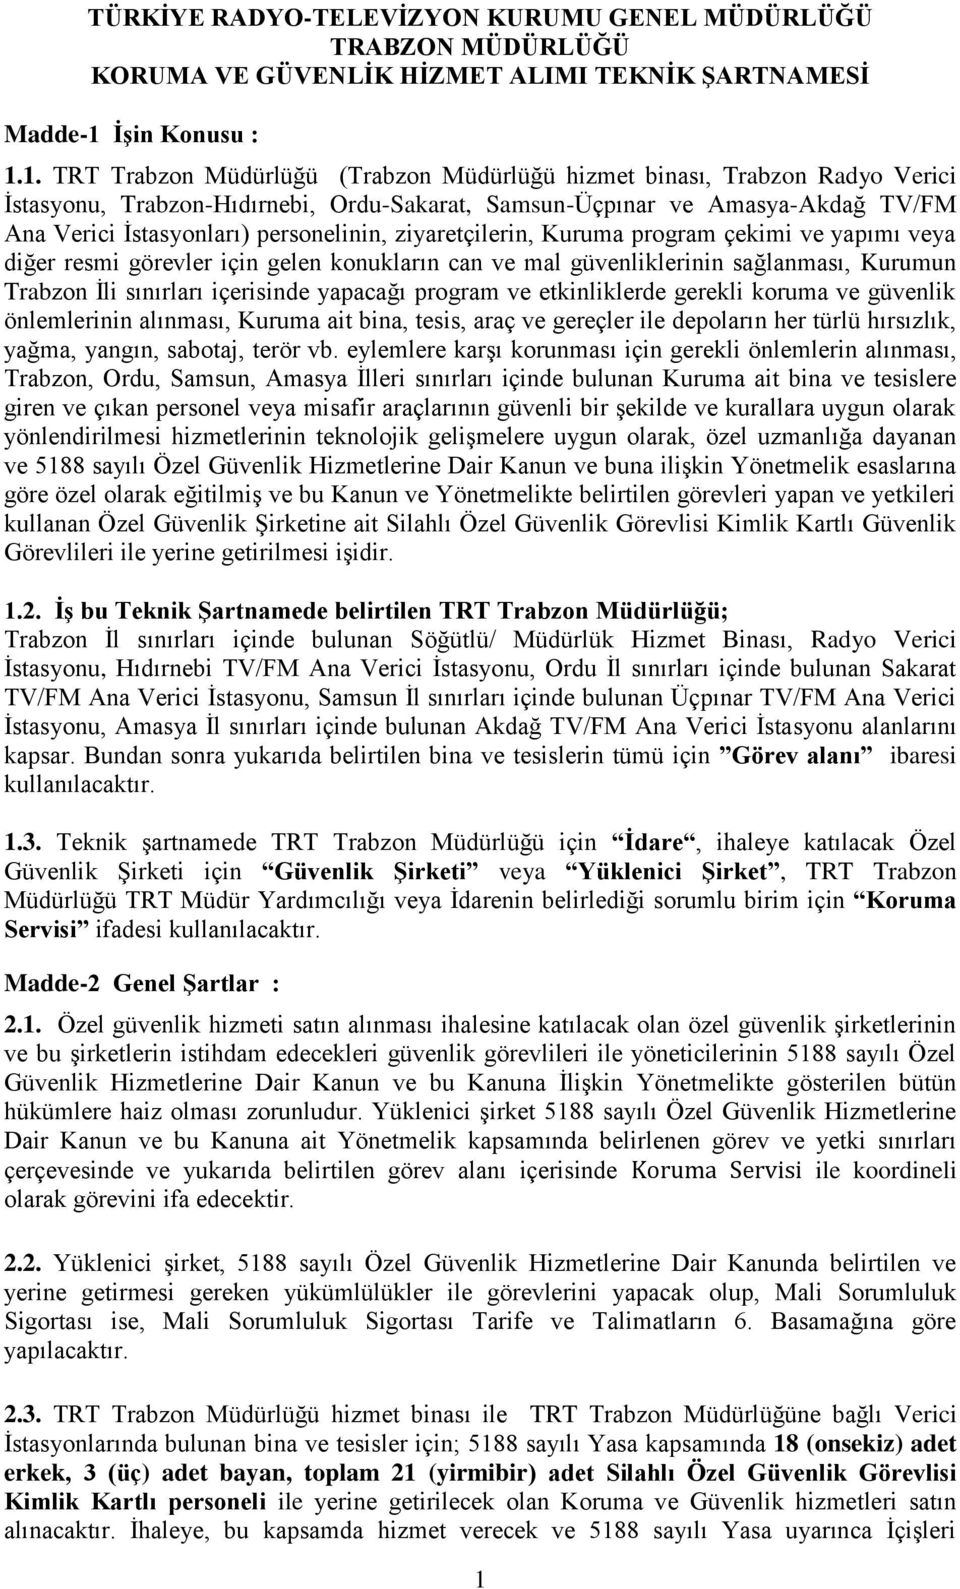 1. TRT Trabzon Müdürlüğü (Trabzon Müdürlüğü hizmet binası, Trabzon Radyo Verici İstasyonu, Trabzon-Hıdırnebi, Ordu-Sakarat, Samsun-Üçpınar ve Amasya-Akdağ TV/FM Ana Verici İstasyonları) personelinin,